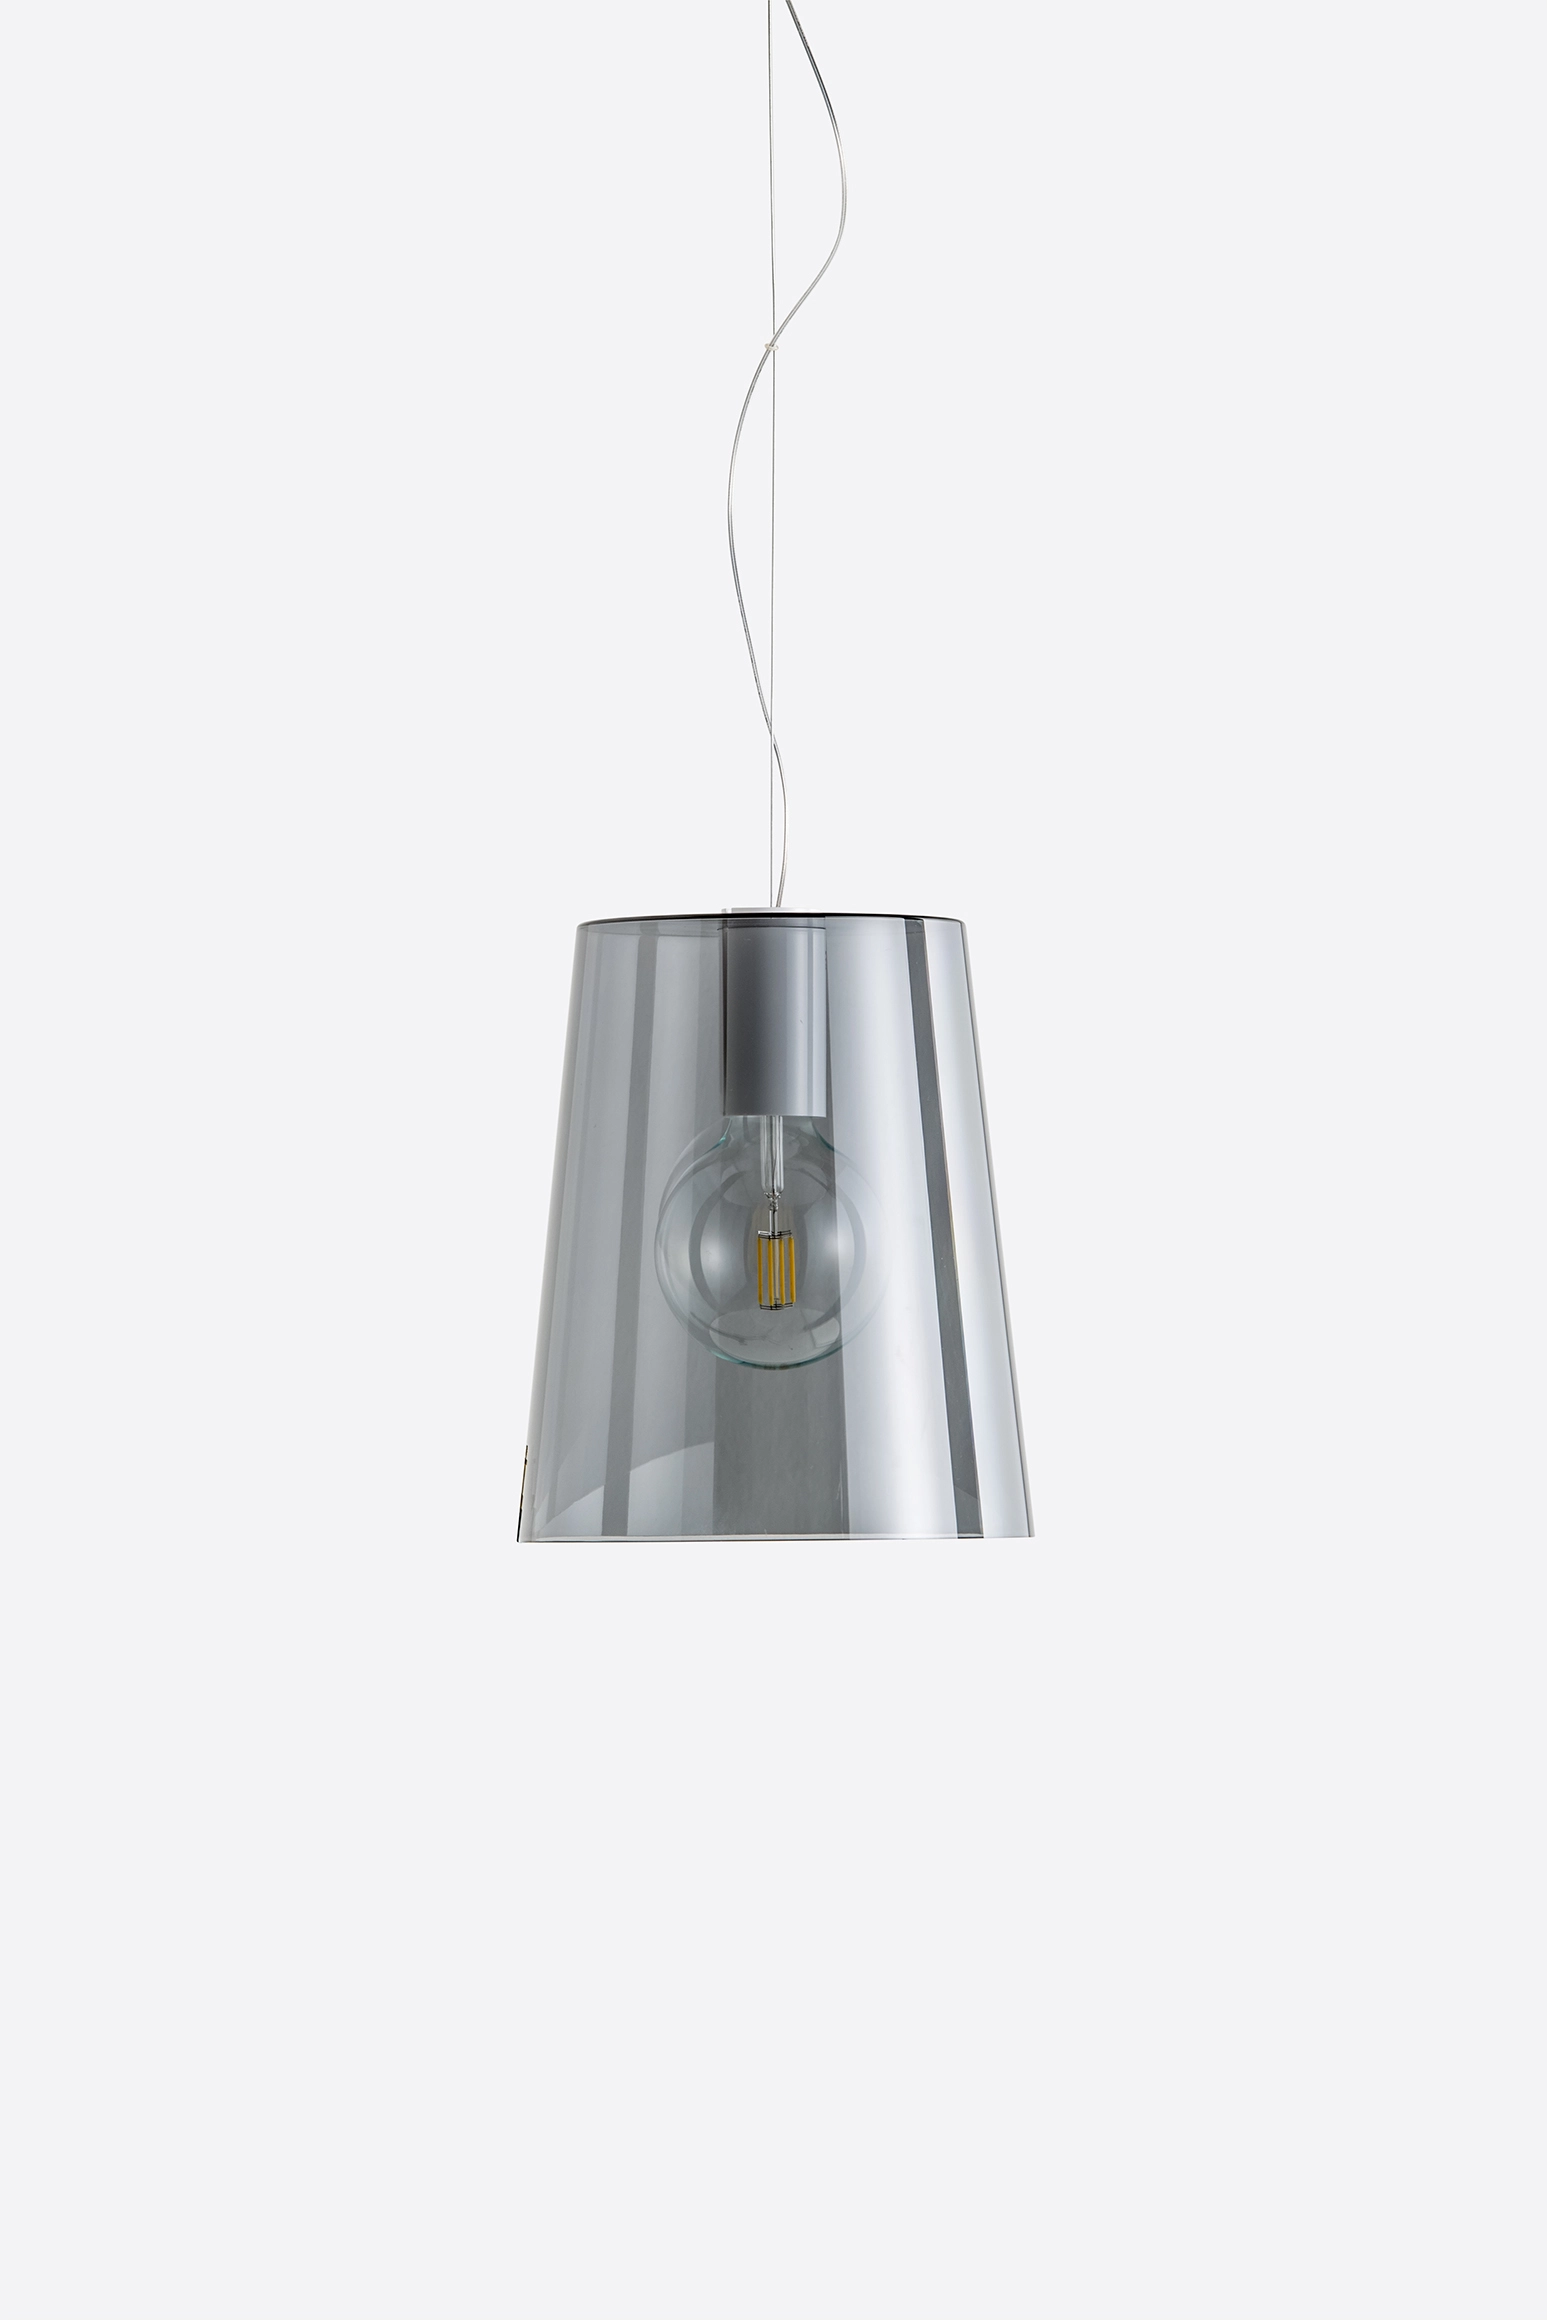 Hängelampe L001S/A - Design Lampe von Pedrali TR - transparent schwarz 4,0 Meter